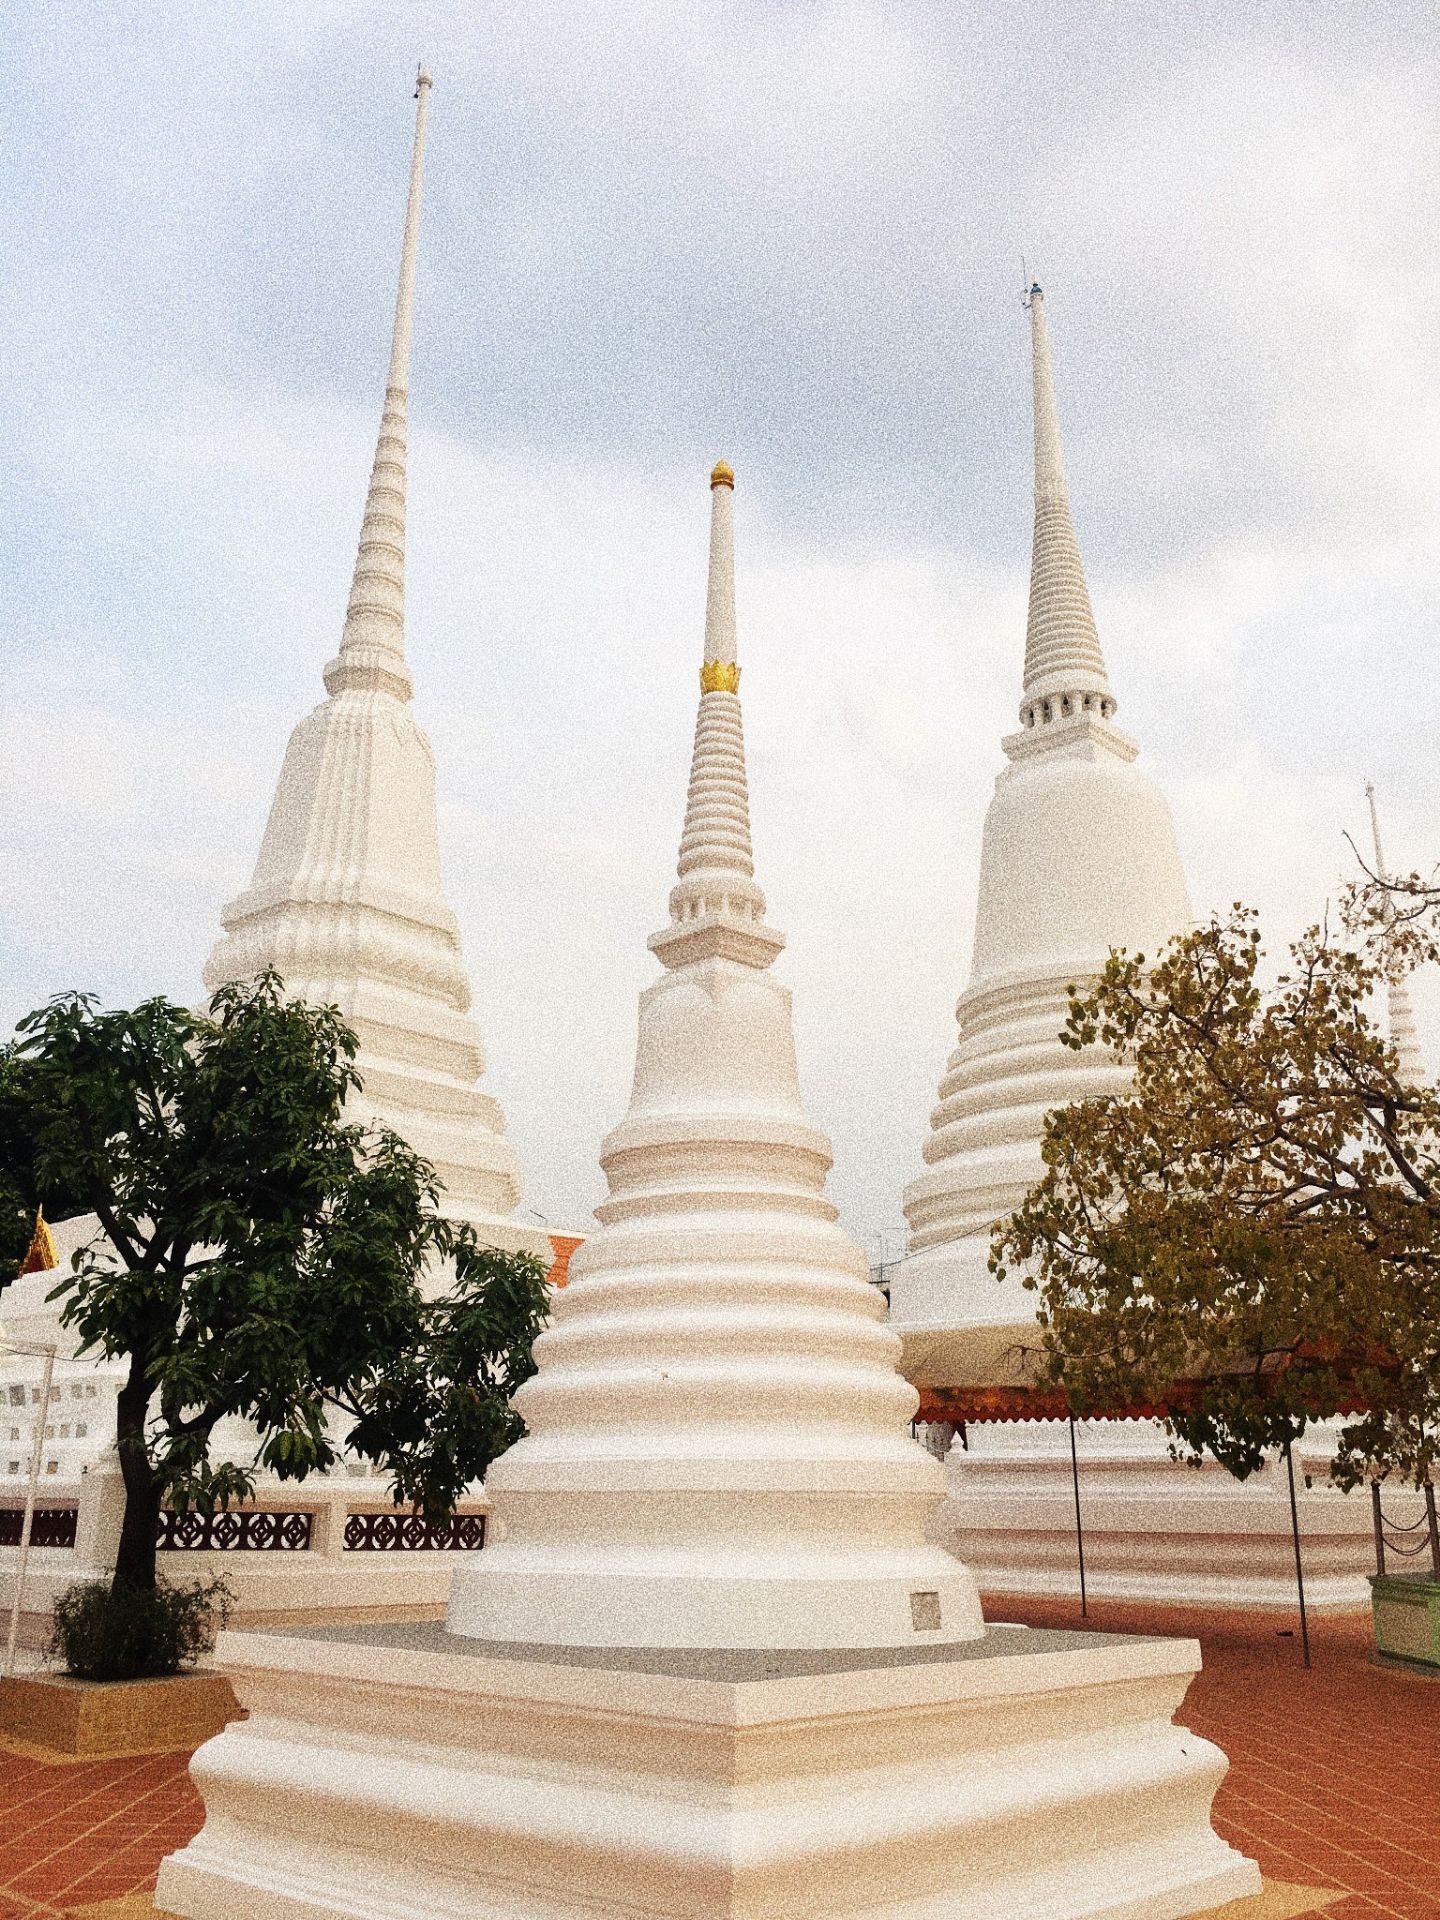 【携程攻略】曼谷苏泰寺景点,苏泰寺也是曼谷的一座著